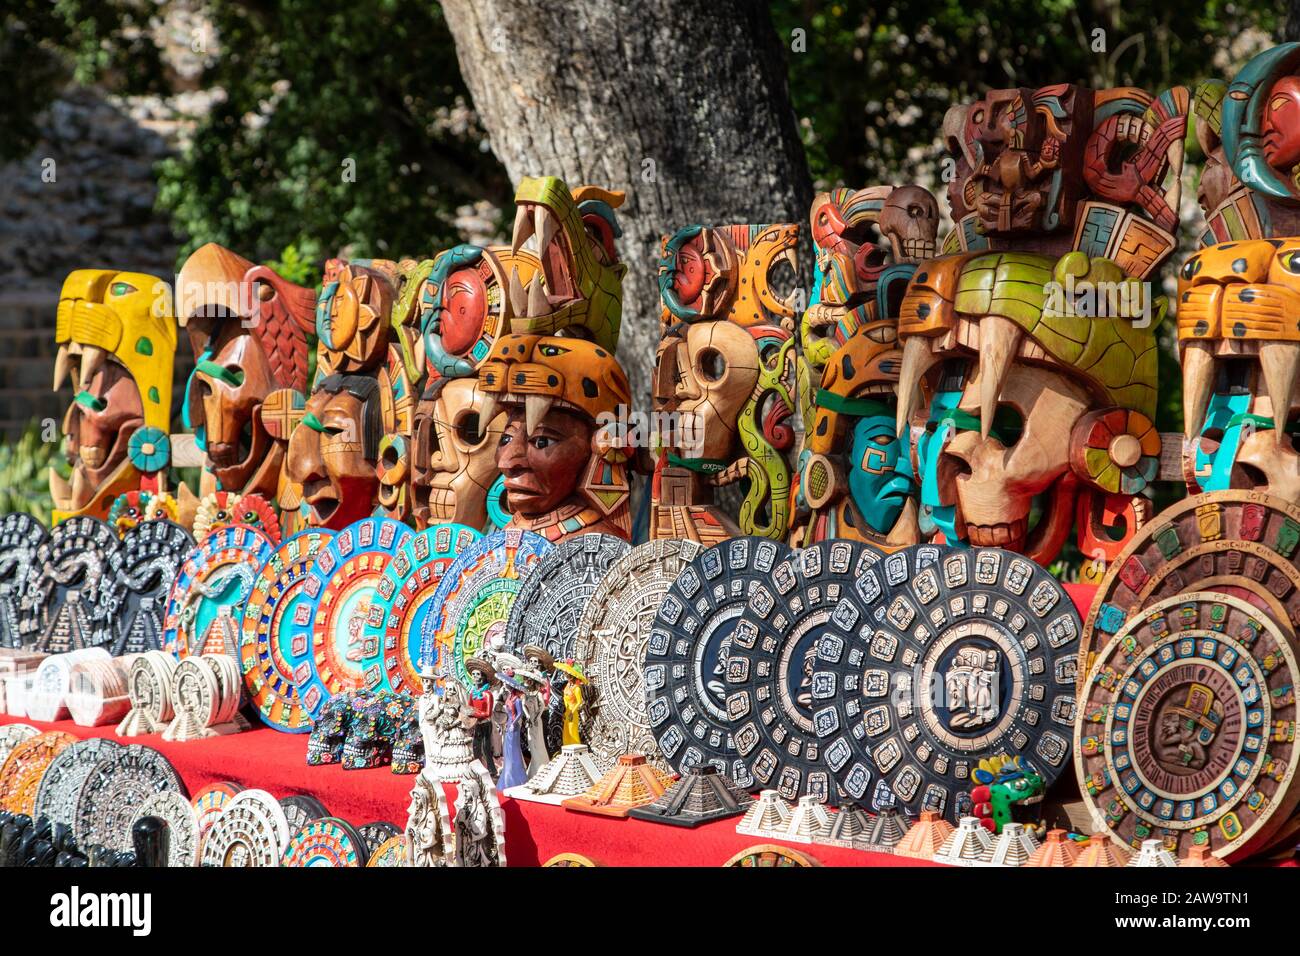 Typische geschnitzte Holz-Souvenirs auf einem lokalen mexikanischen Markt in Chichen Itza, Yucatan-Halbinsel, Mexiko. Stockfoto